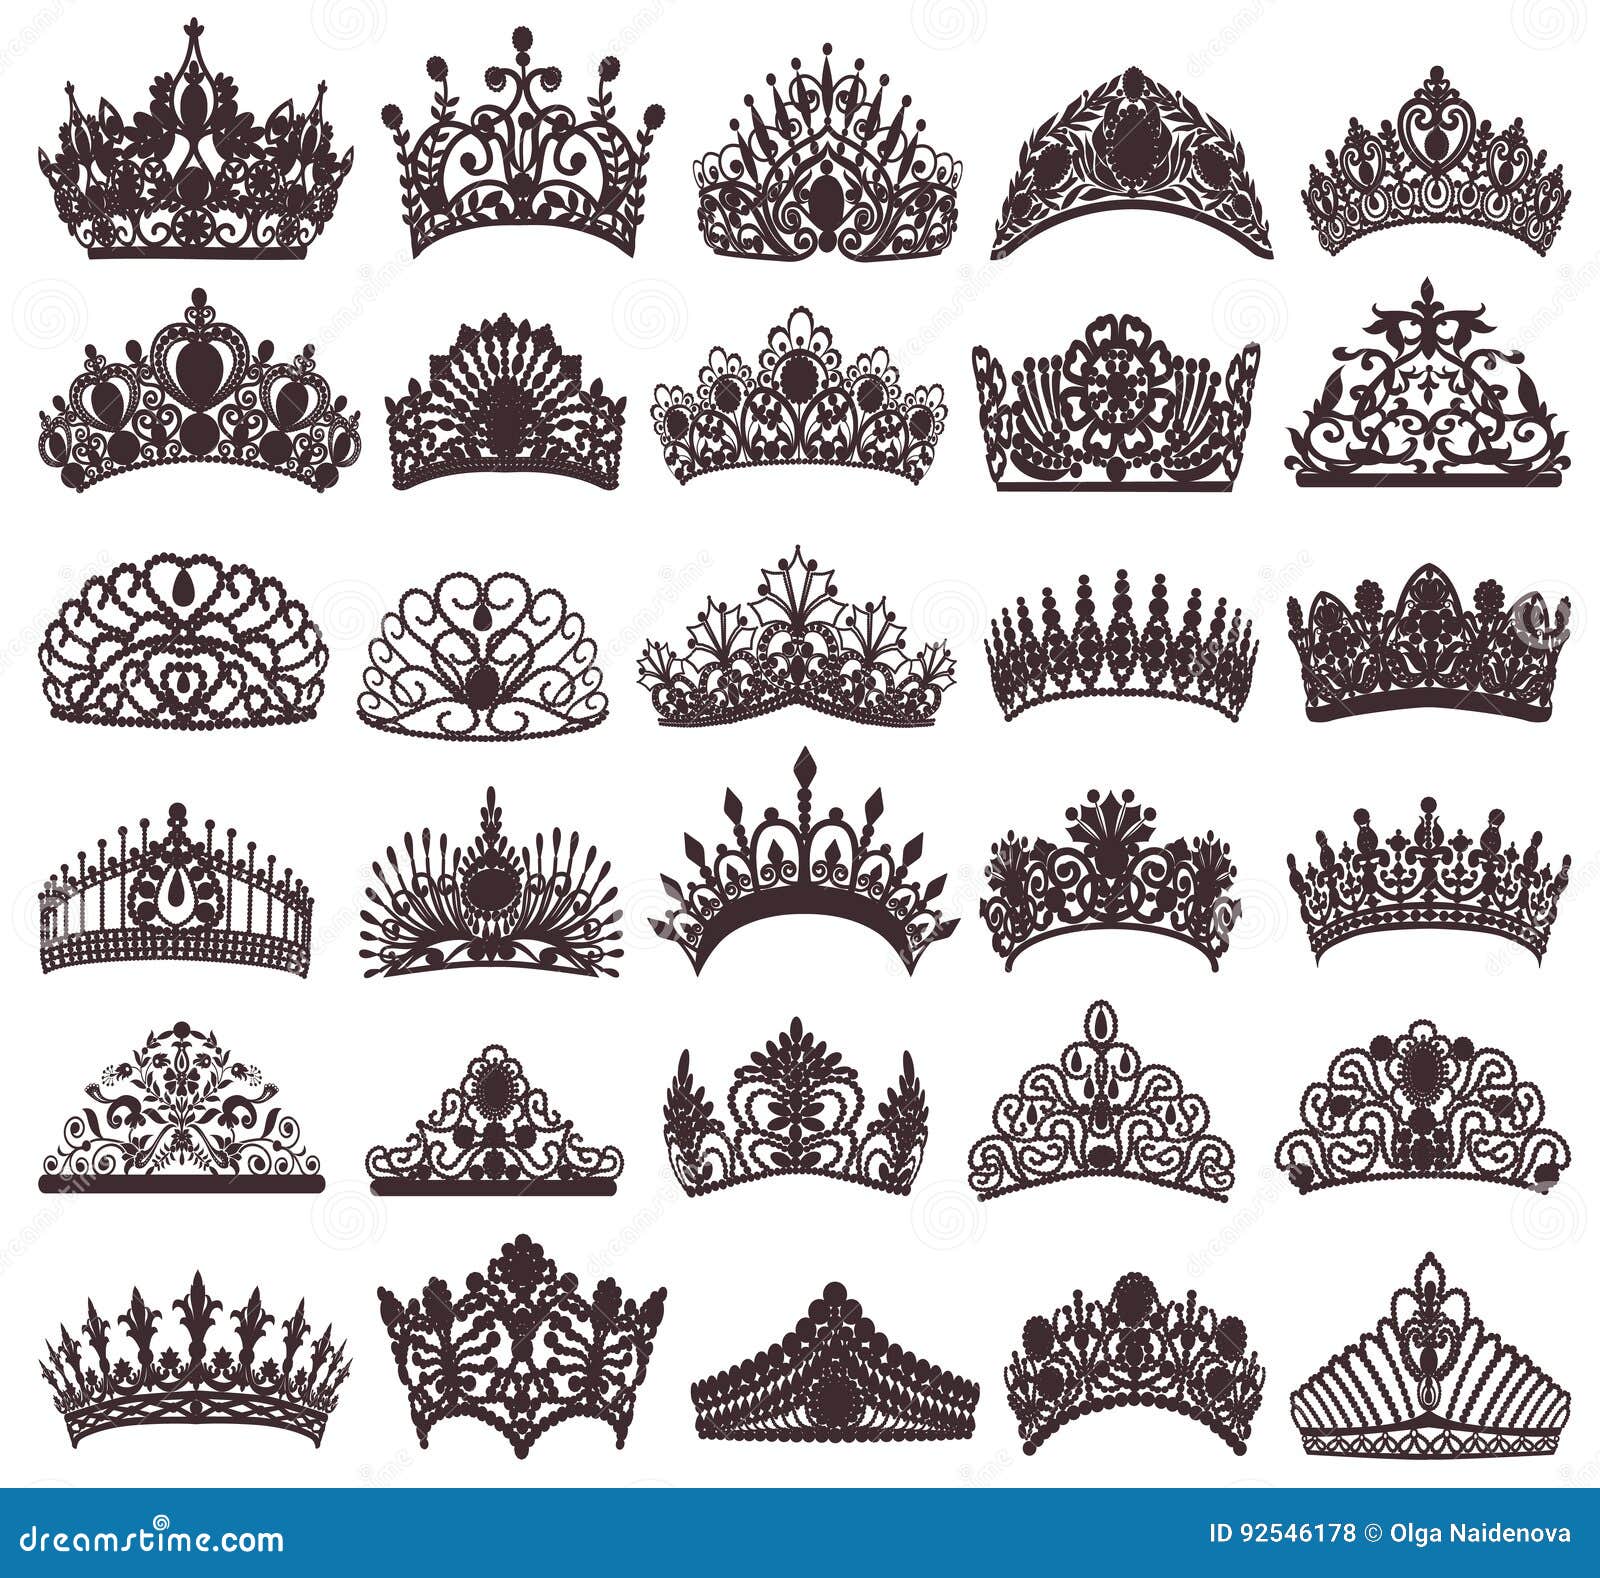 set of silhouettes of ancient crowns, tiaras, tiara